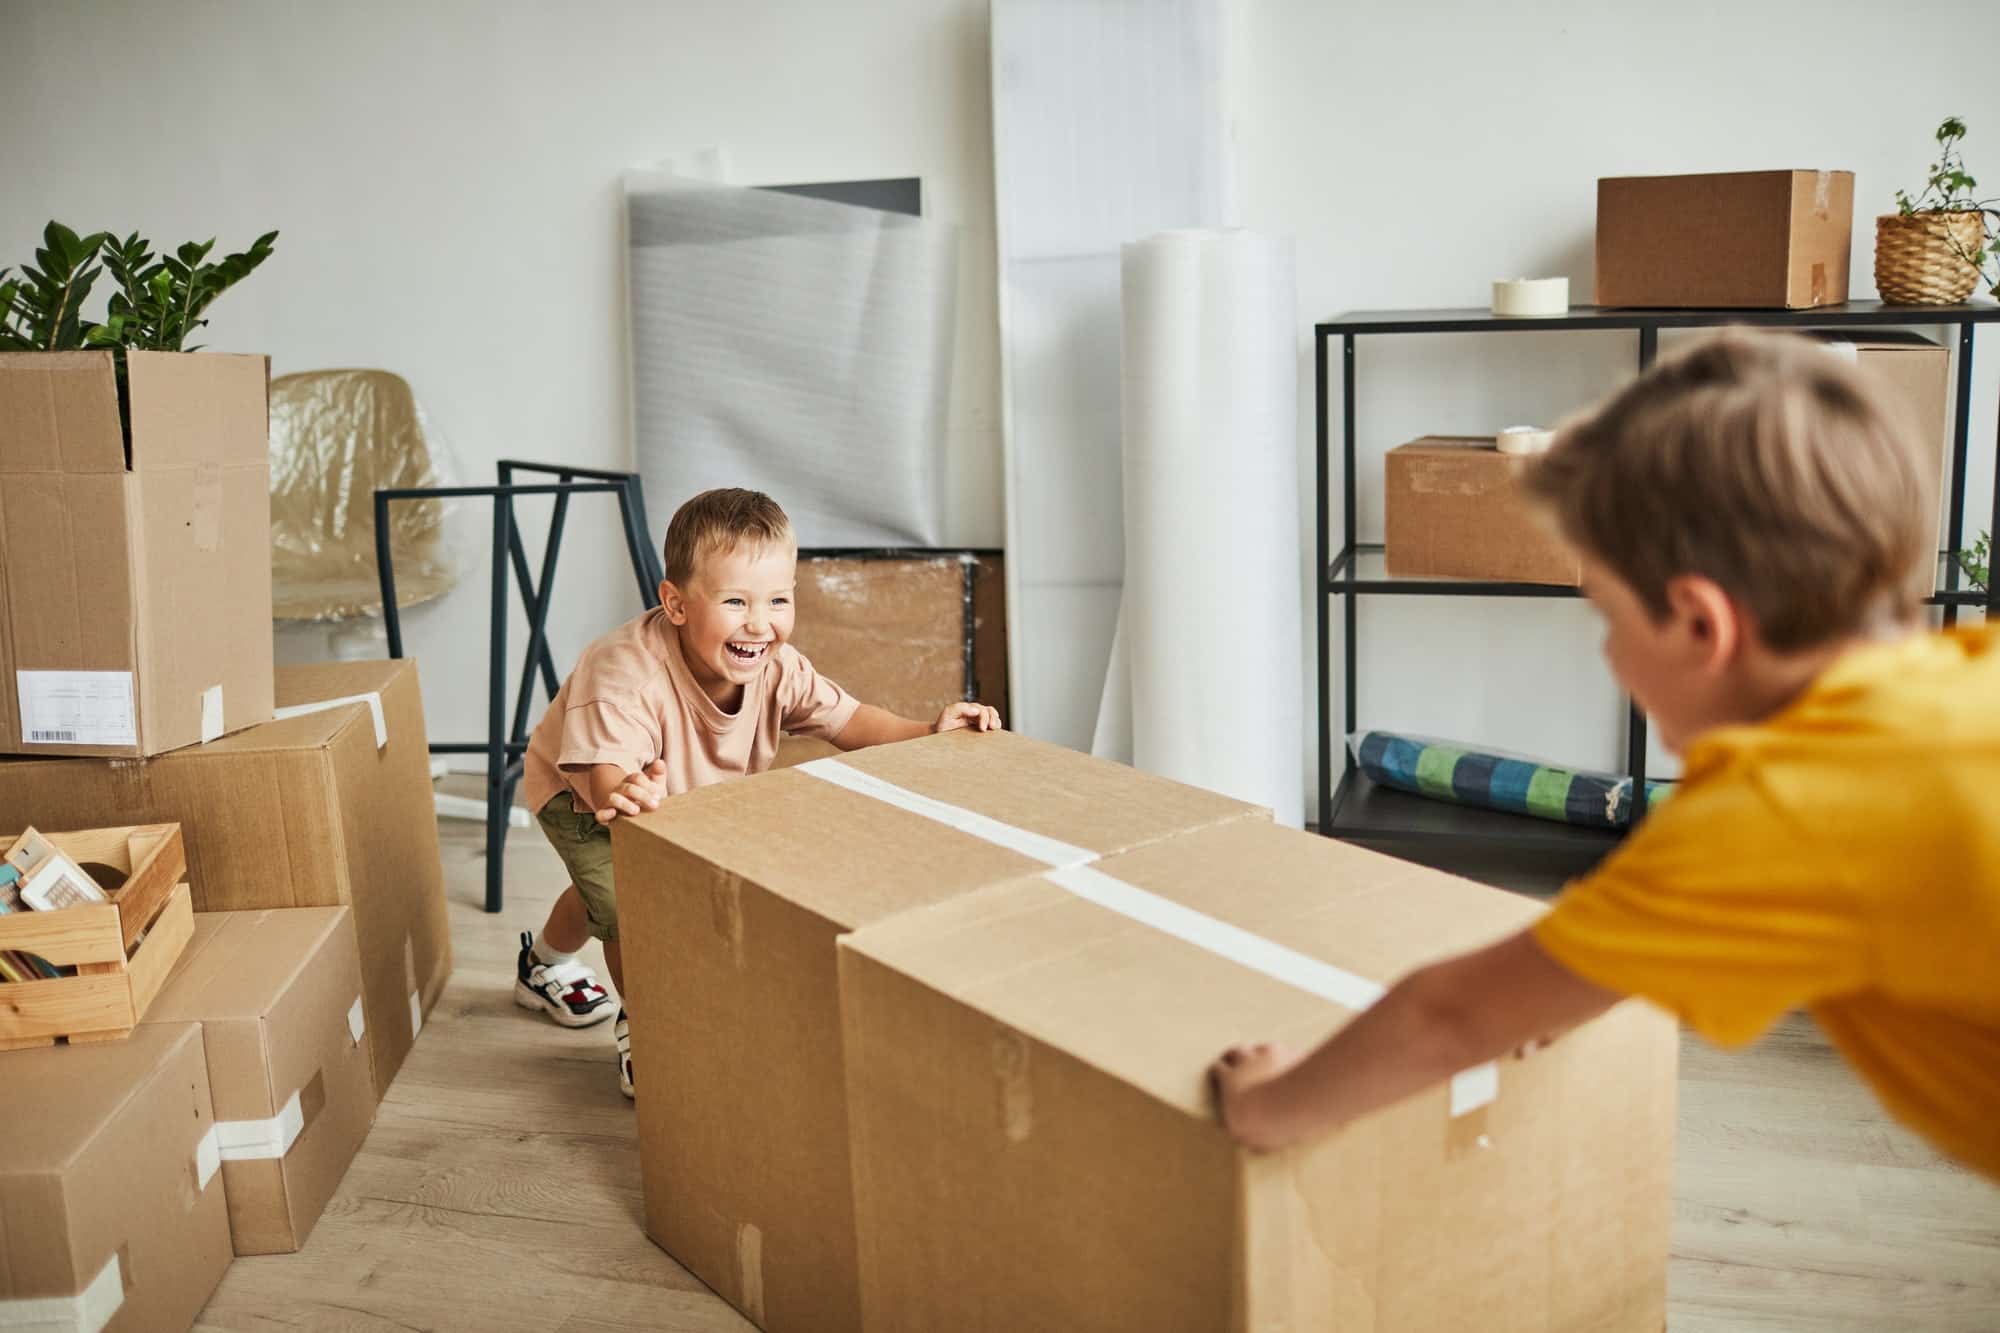 Projet de déménagement : combien de cartons avez-vous besoin ?